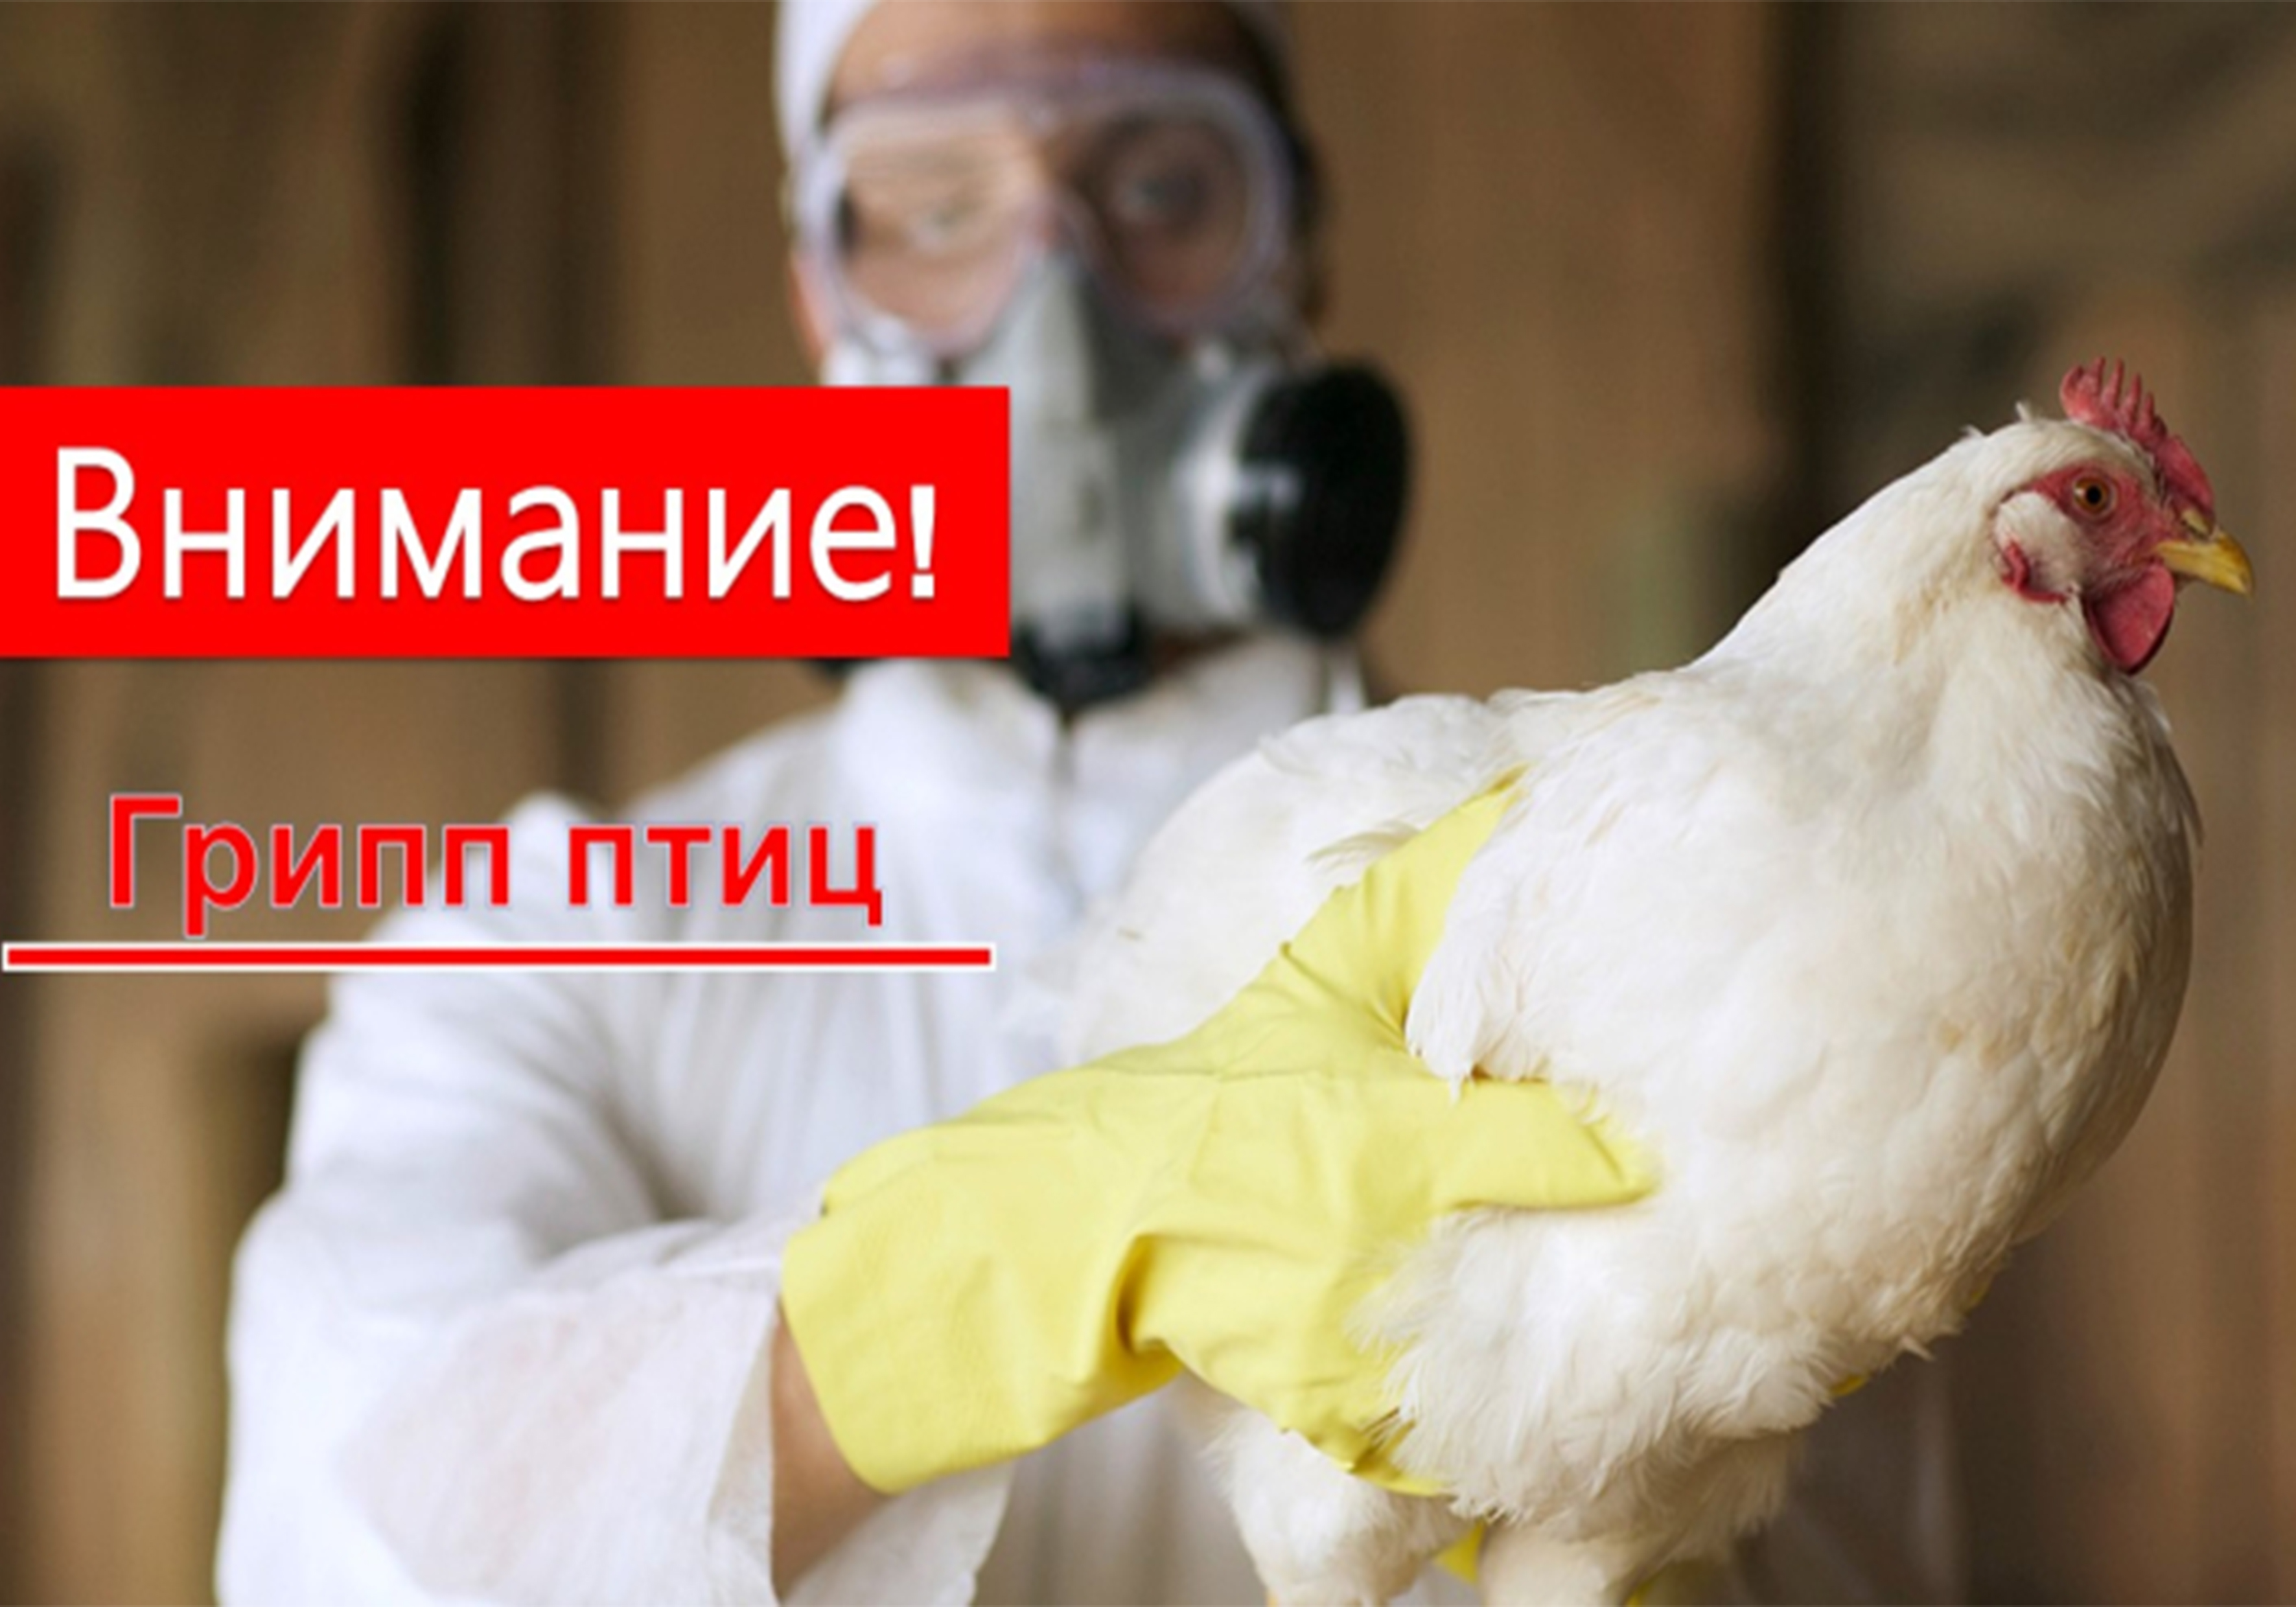 Памятка по профилактике высокопатогенного гриппа птиц